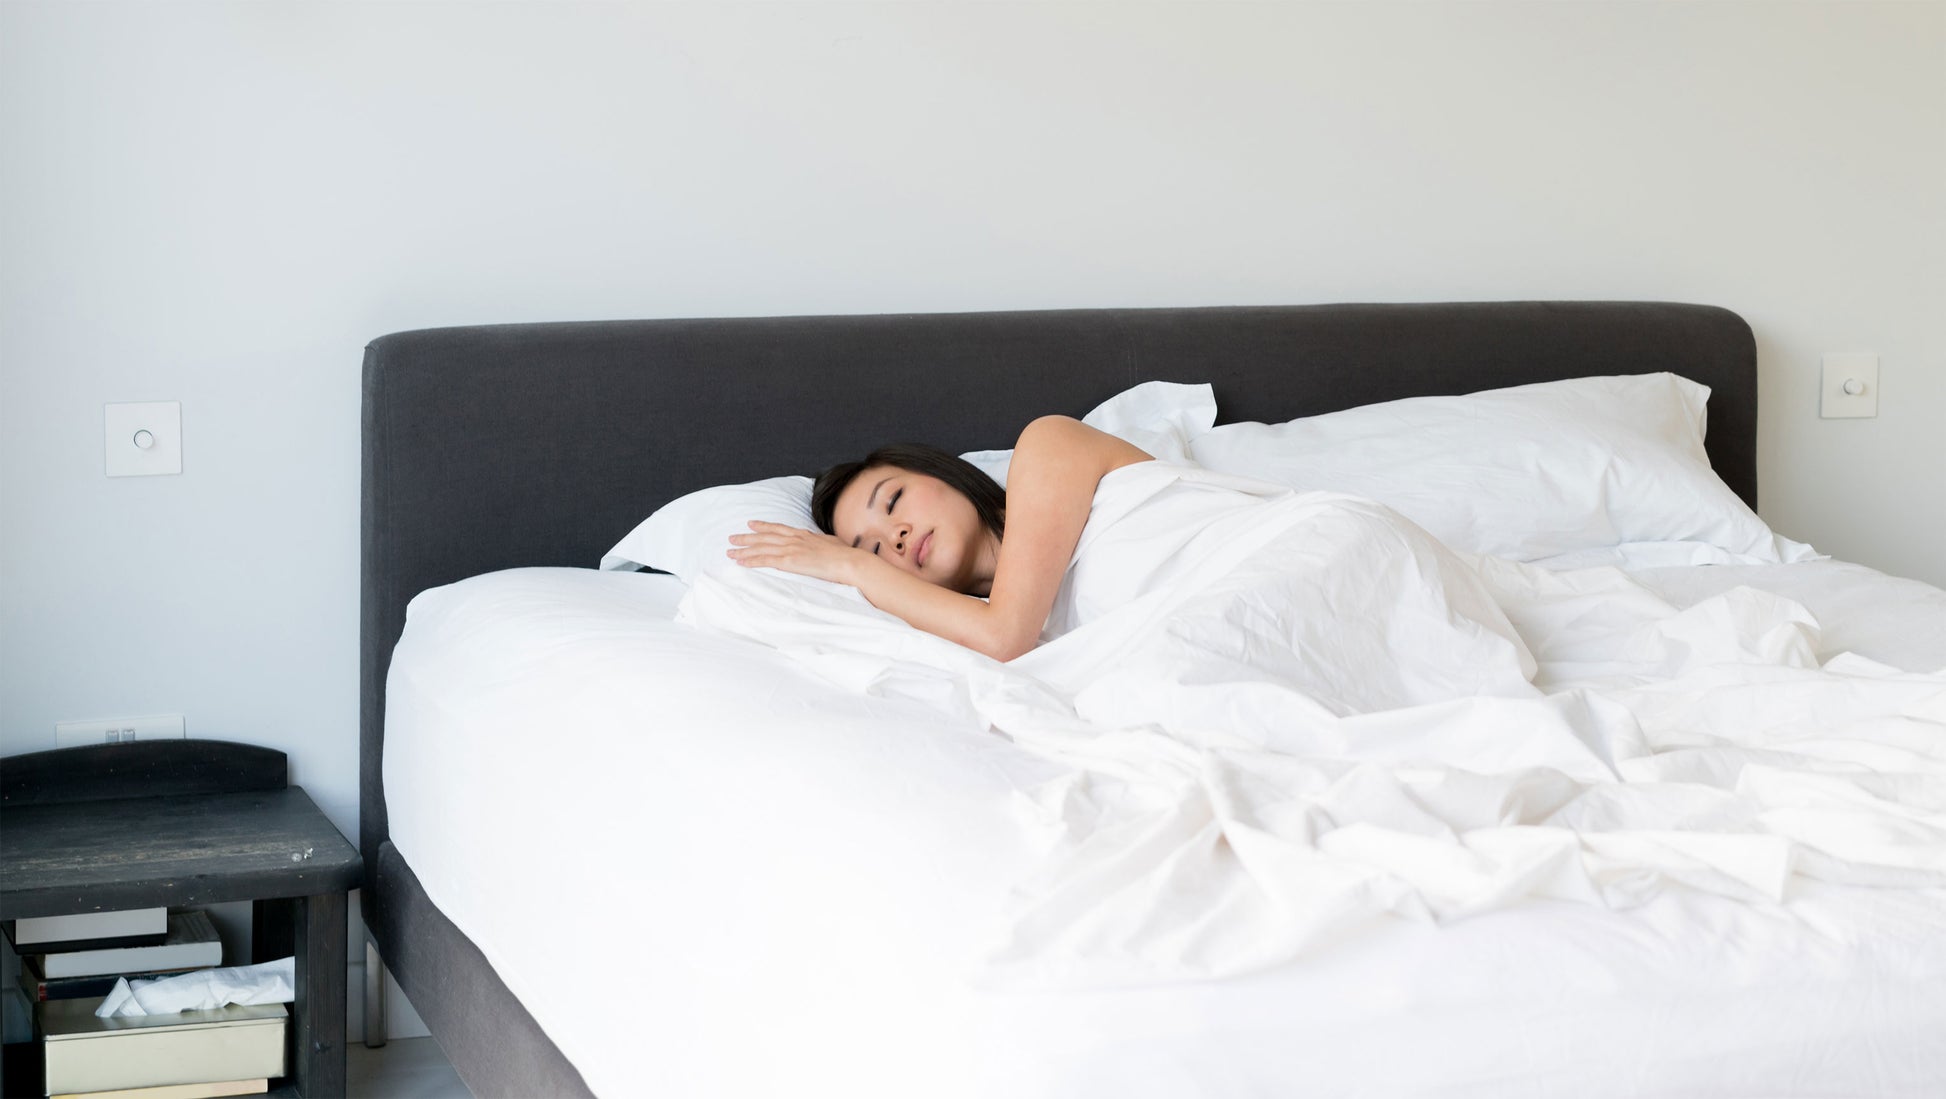 Femme couchée dans un lit blanc avec une table de chevet noire